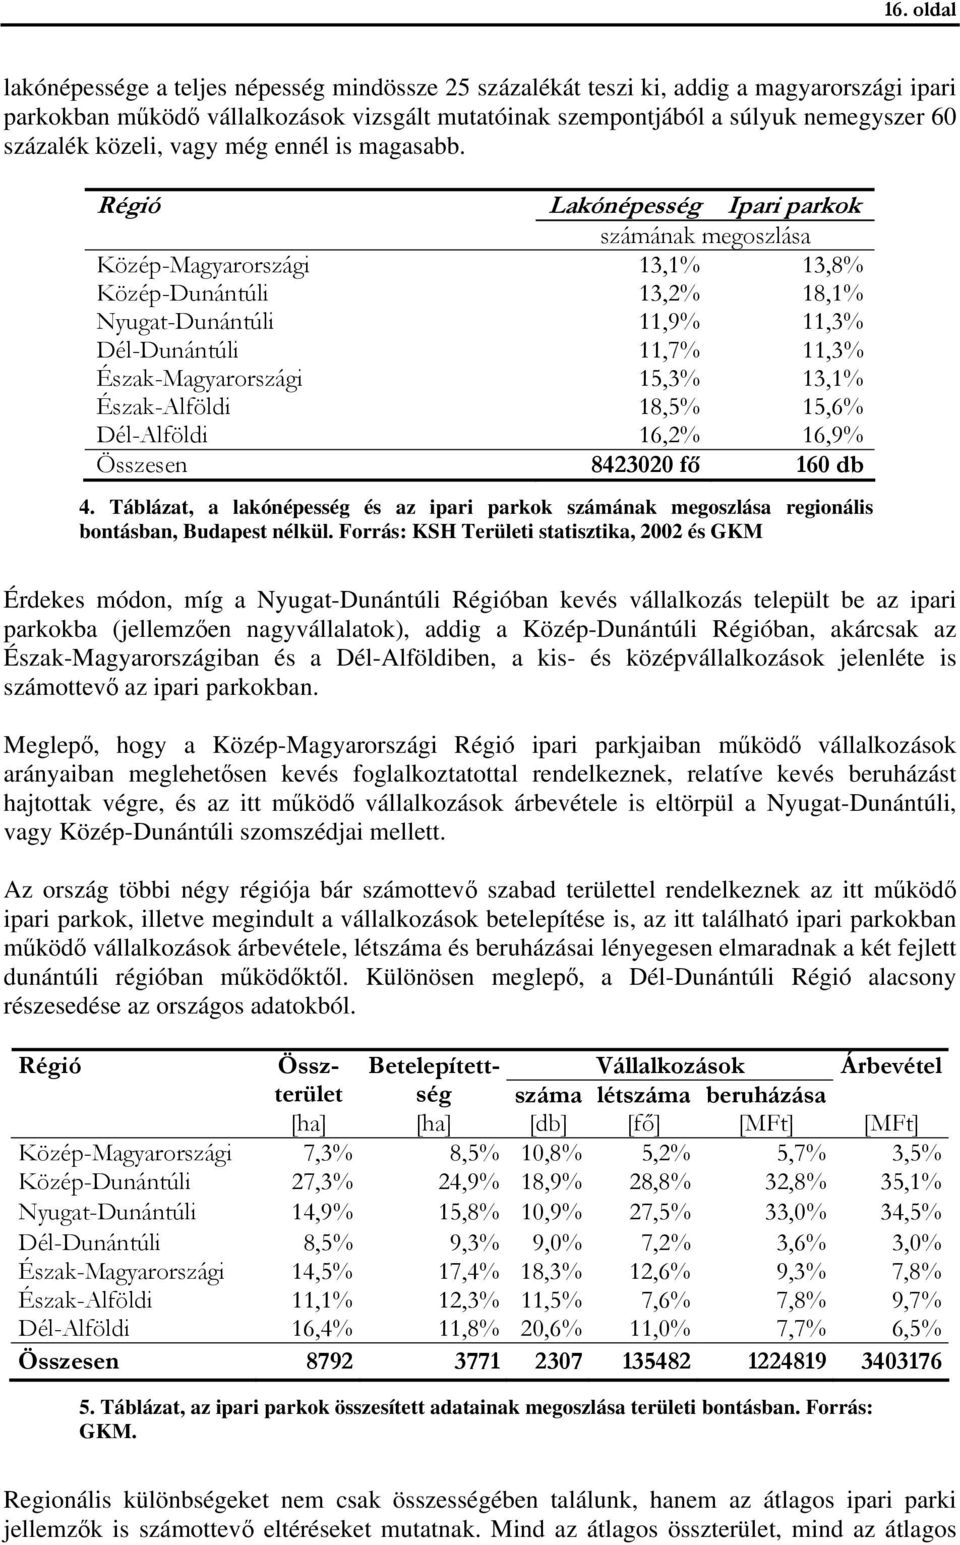 Régió Lakónépesség Ipari parkok számának megoszlása Közép-Magyarországi 13,1% 13,8% Közép-Dunántúli 13,2% 18,1% Nyugat-Dunántúli 11,9% 11,3% Dél-Dunántúli 11,7% 11,3% Észak-Magyarországi 15,3% 13,1%